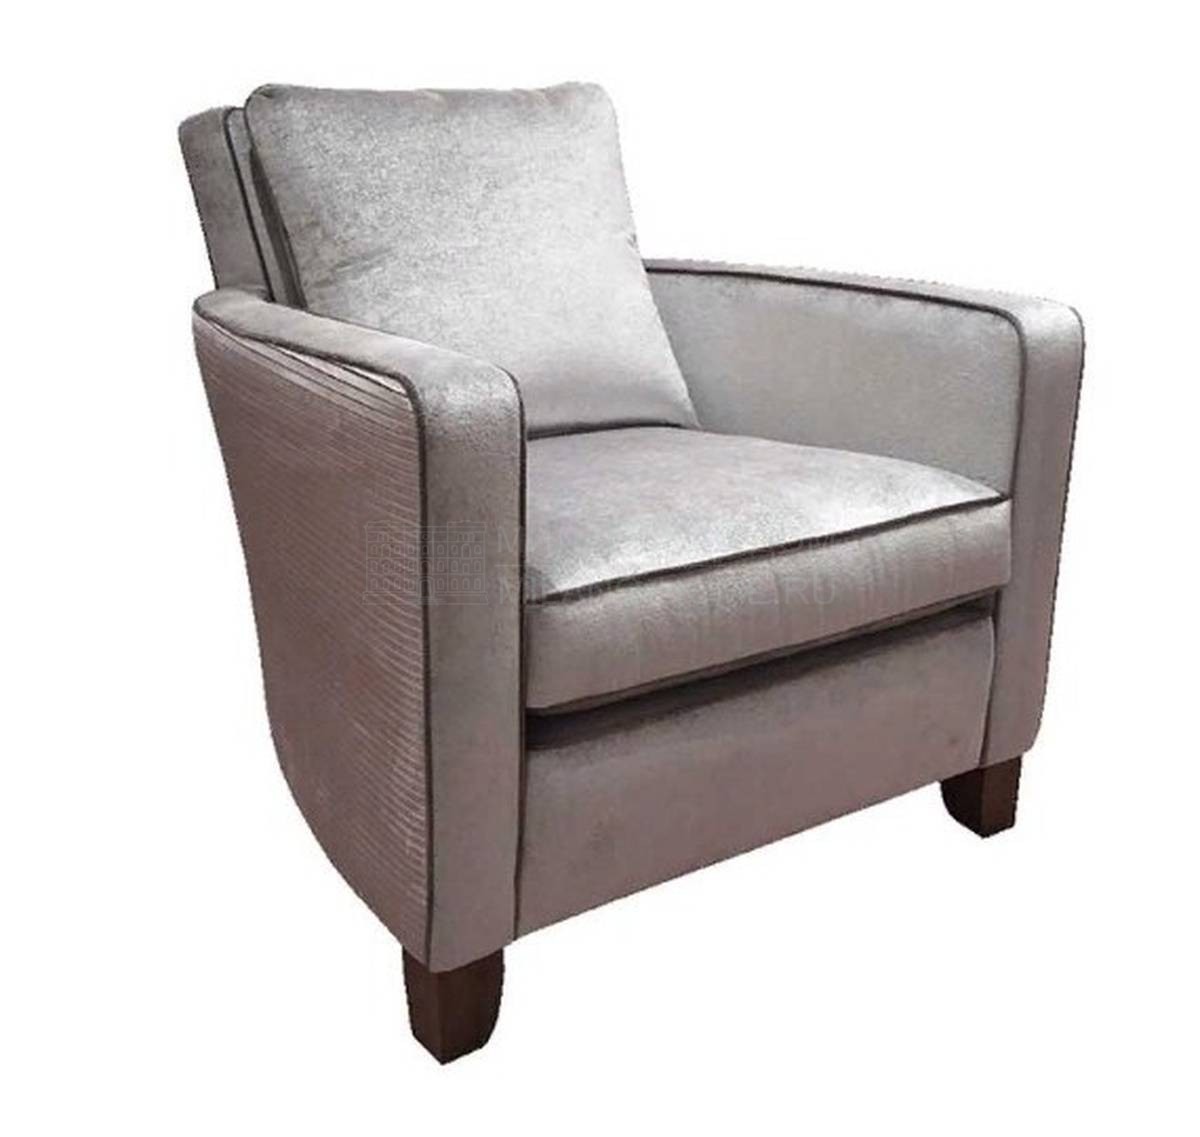 Кресло Hoyland armchair из Великобритании фабрики DURESTA